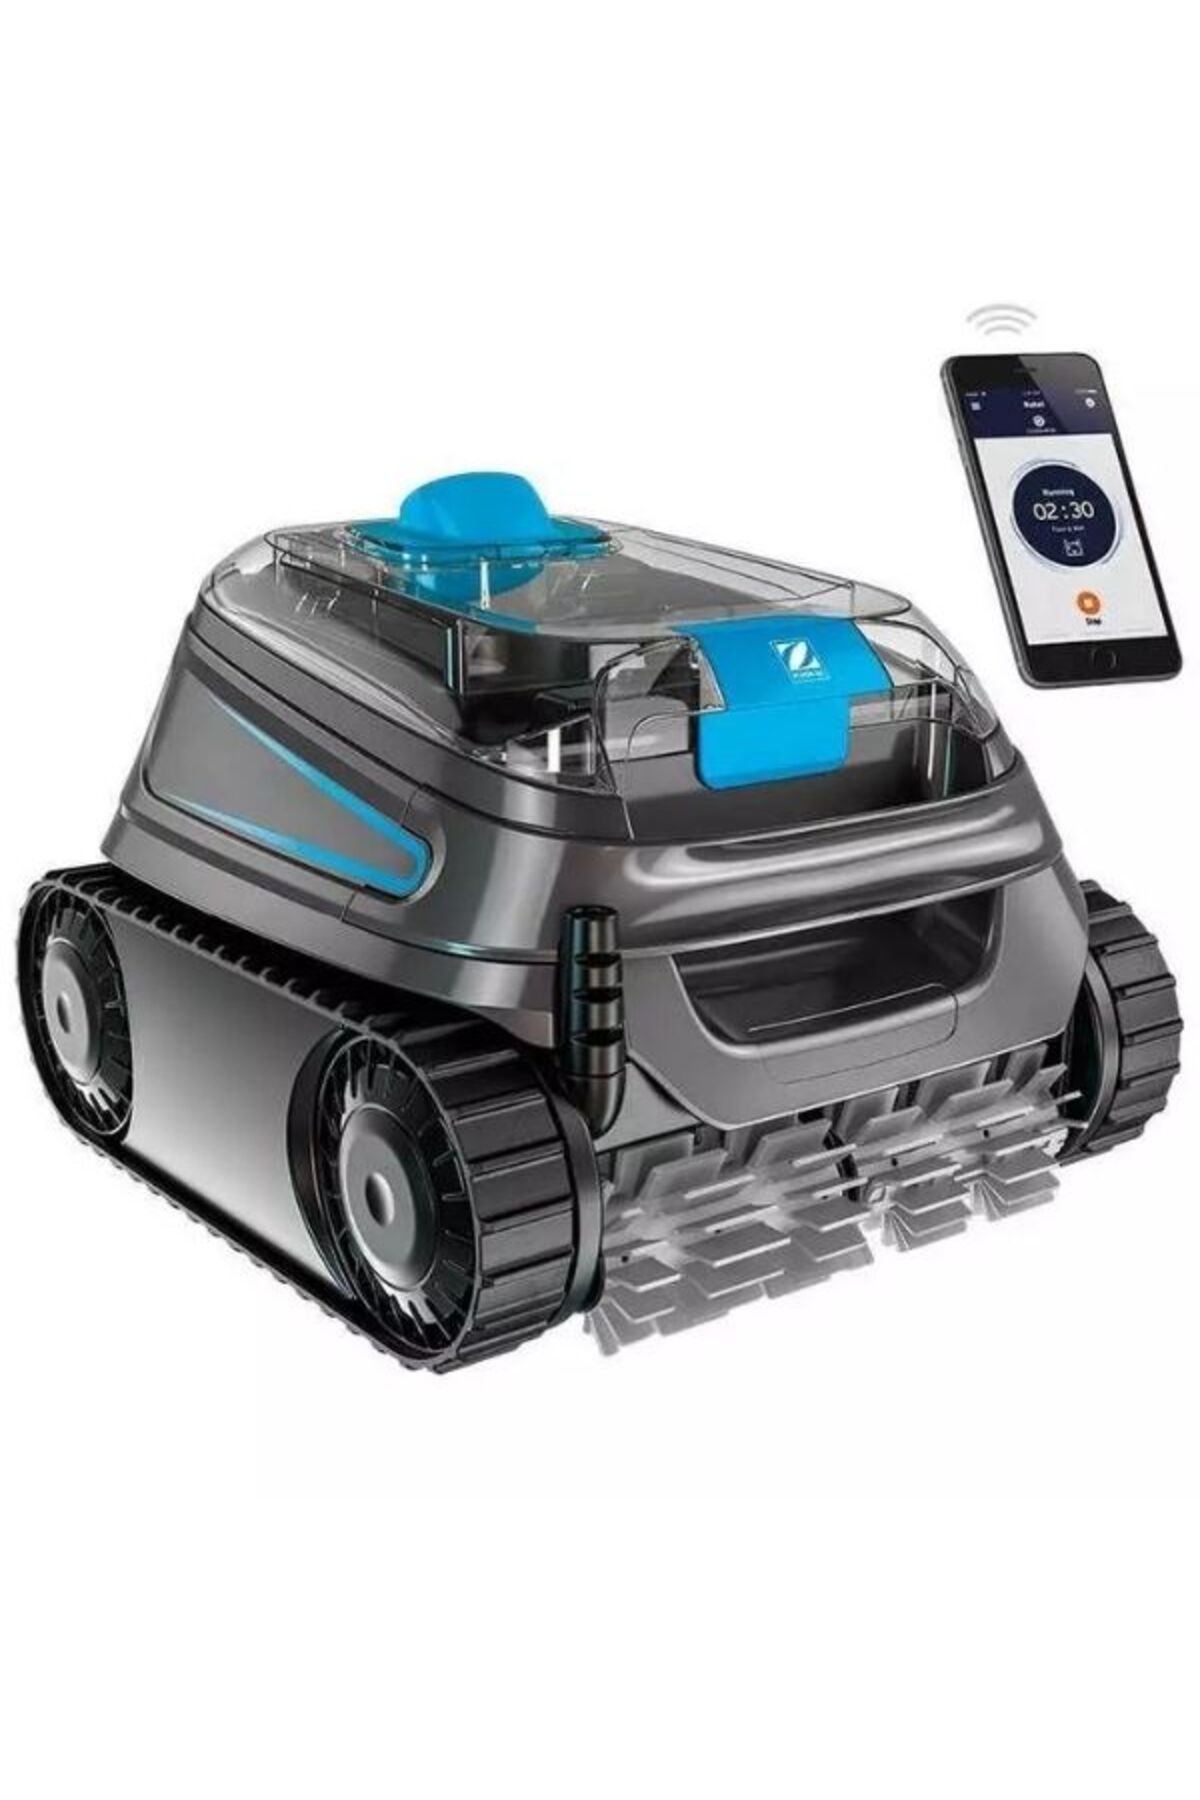 Zodiac CNX 40 iQ Otomatik Havuz Süpürge Robotu-Robotic Poll Cleaner-ToptancıyızBiz